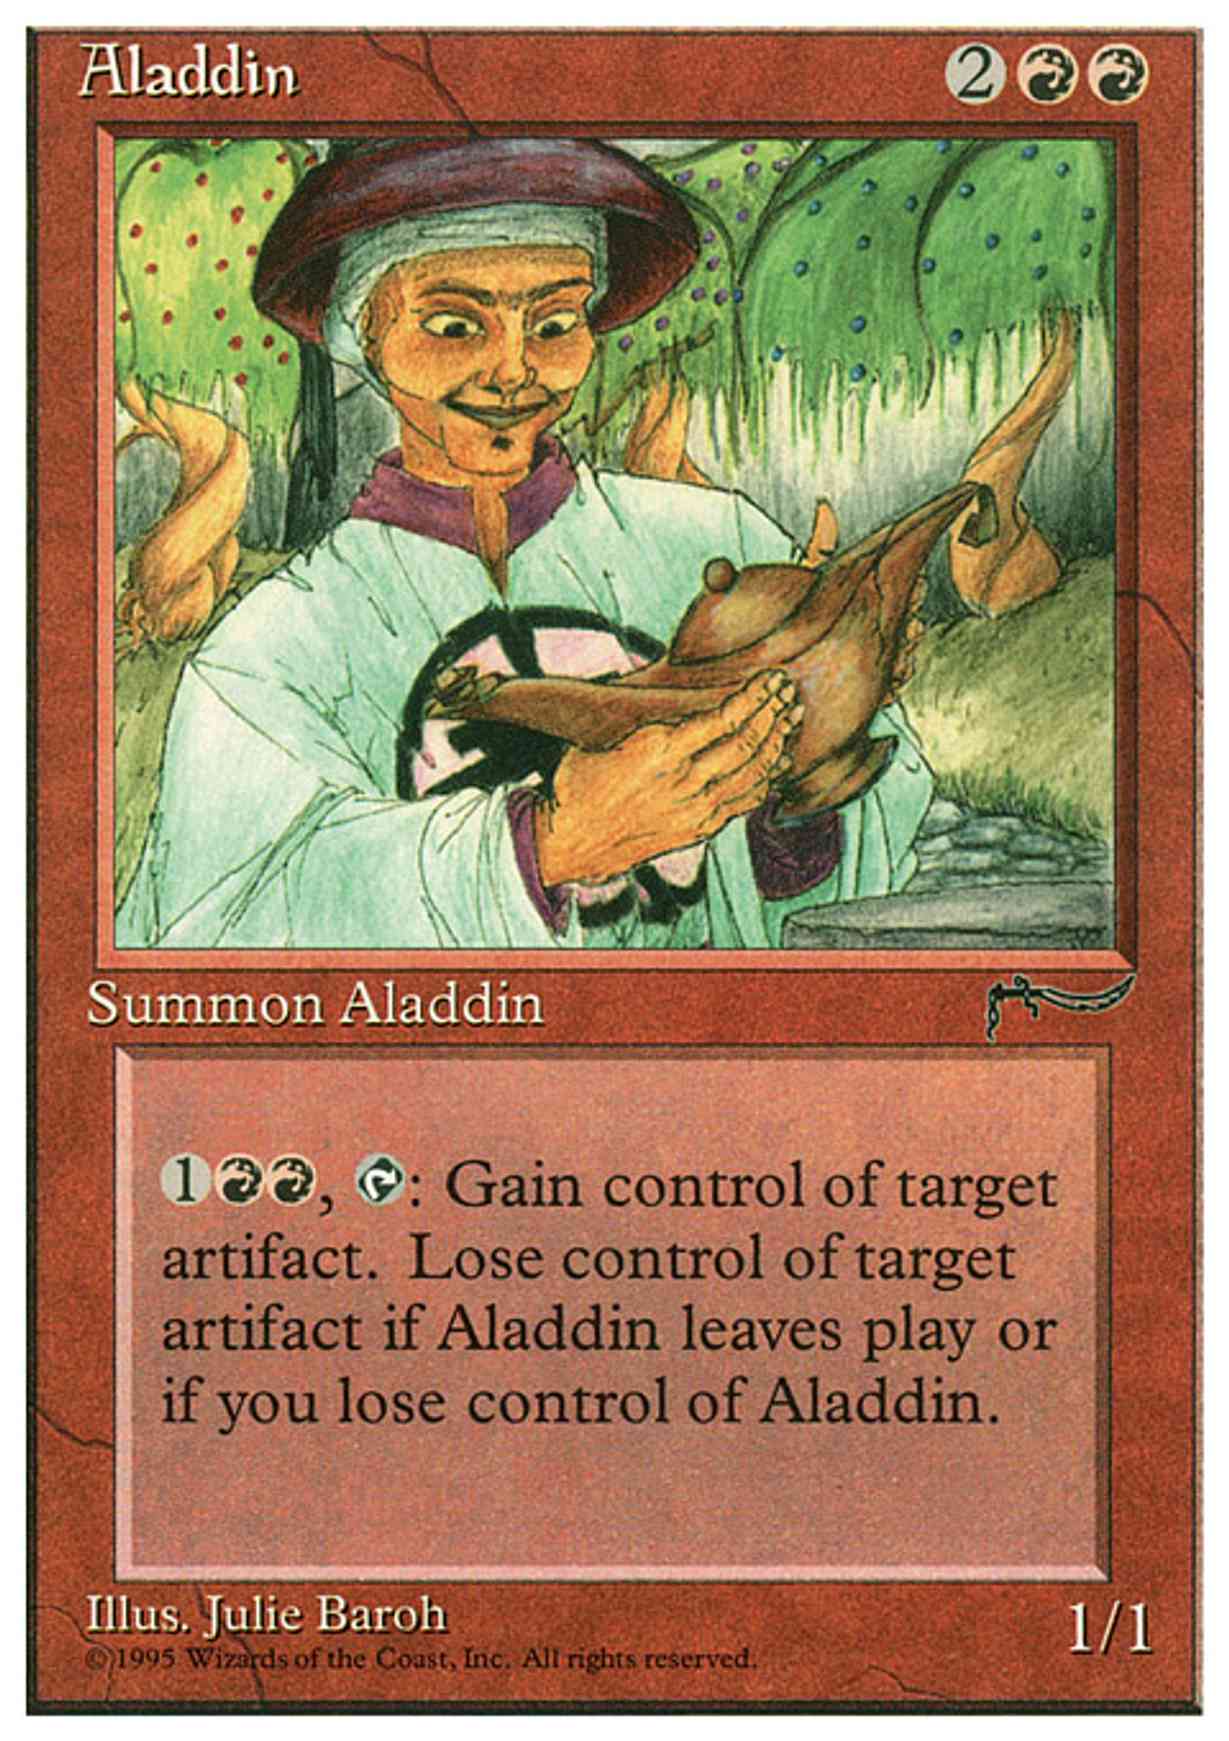 Aladdin magic card front